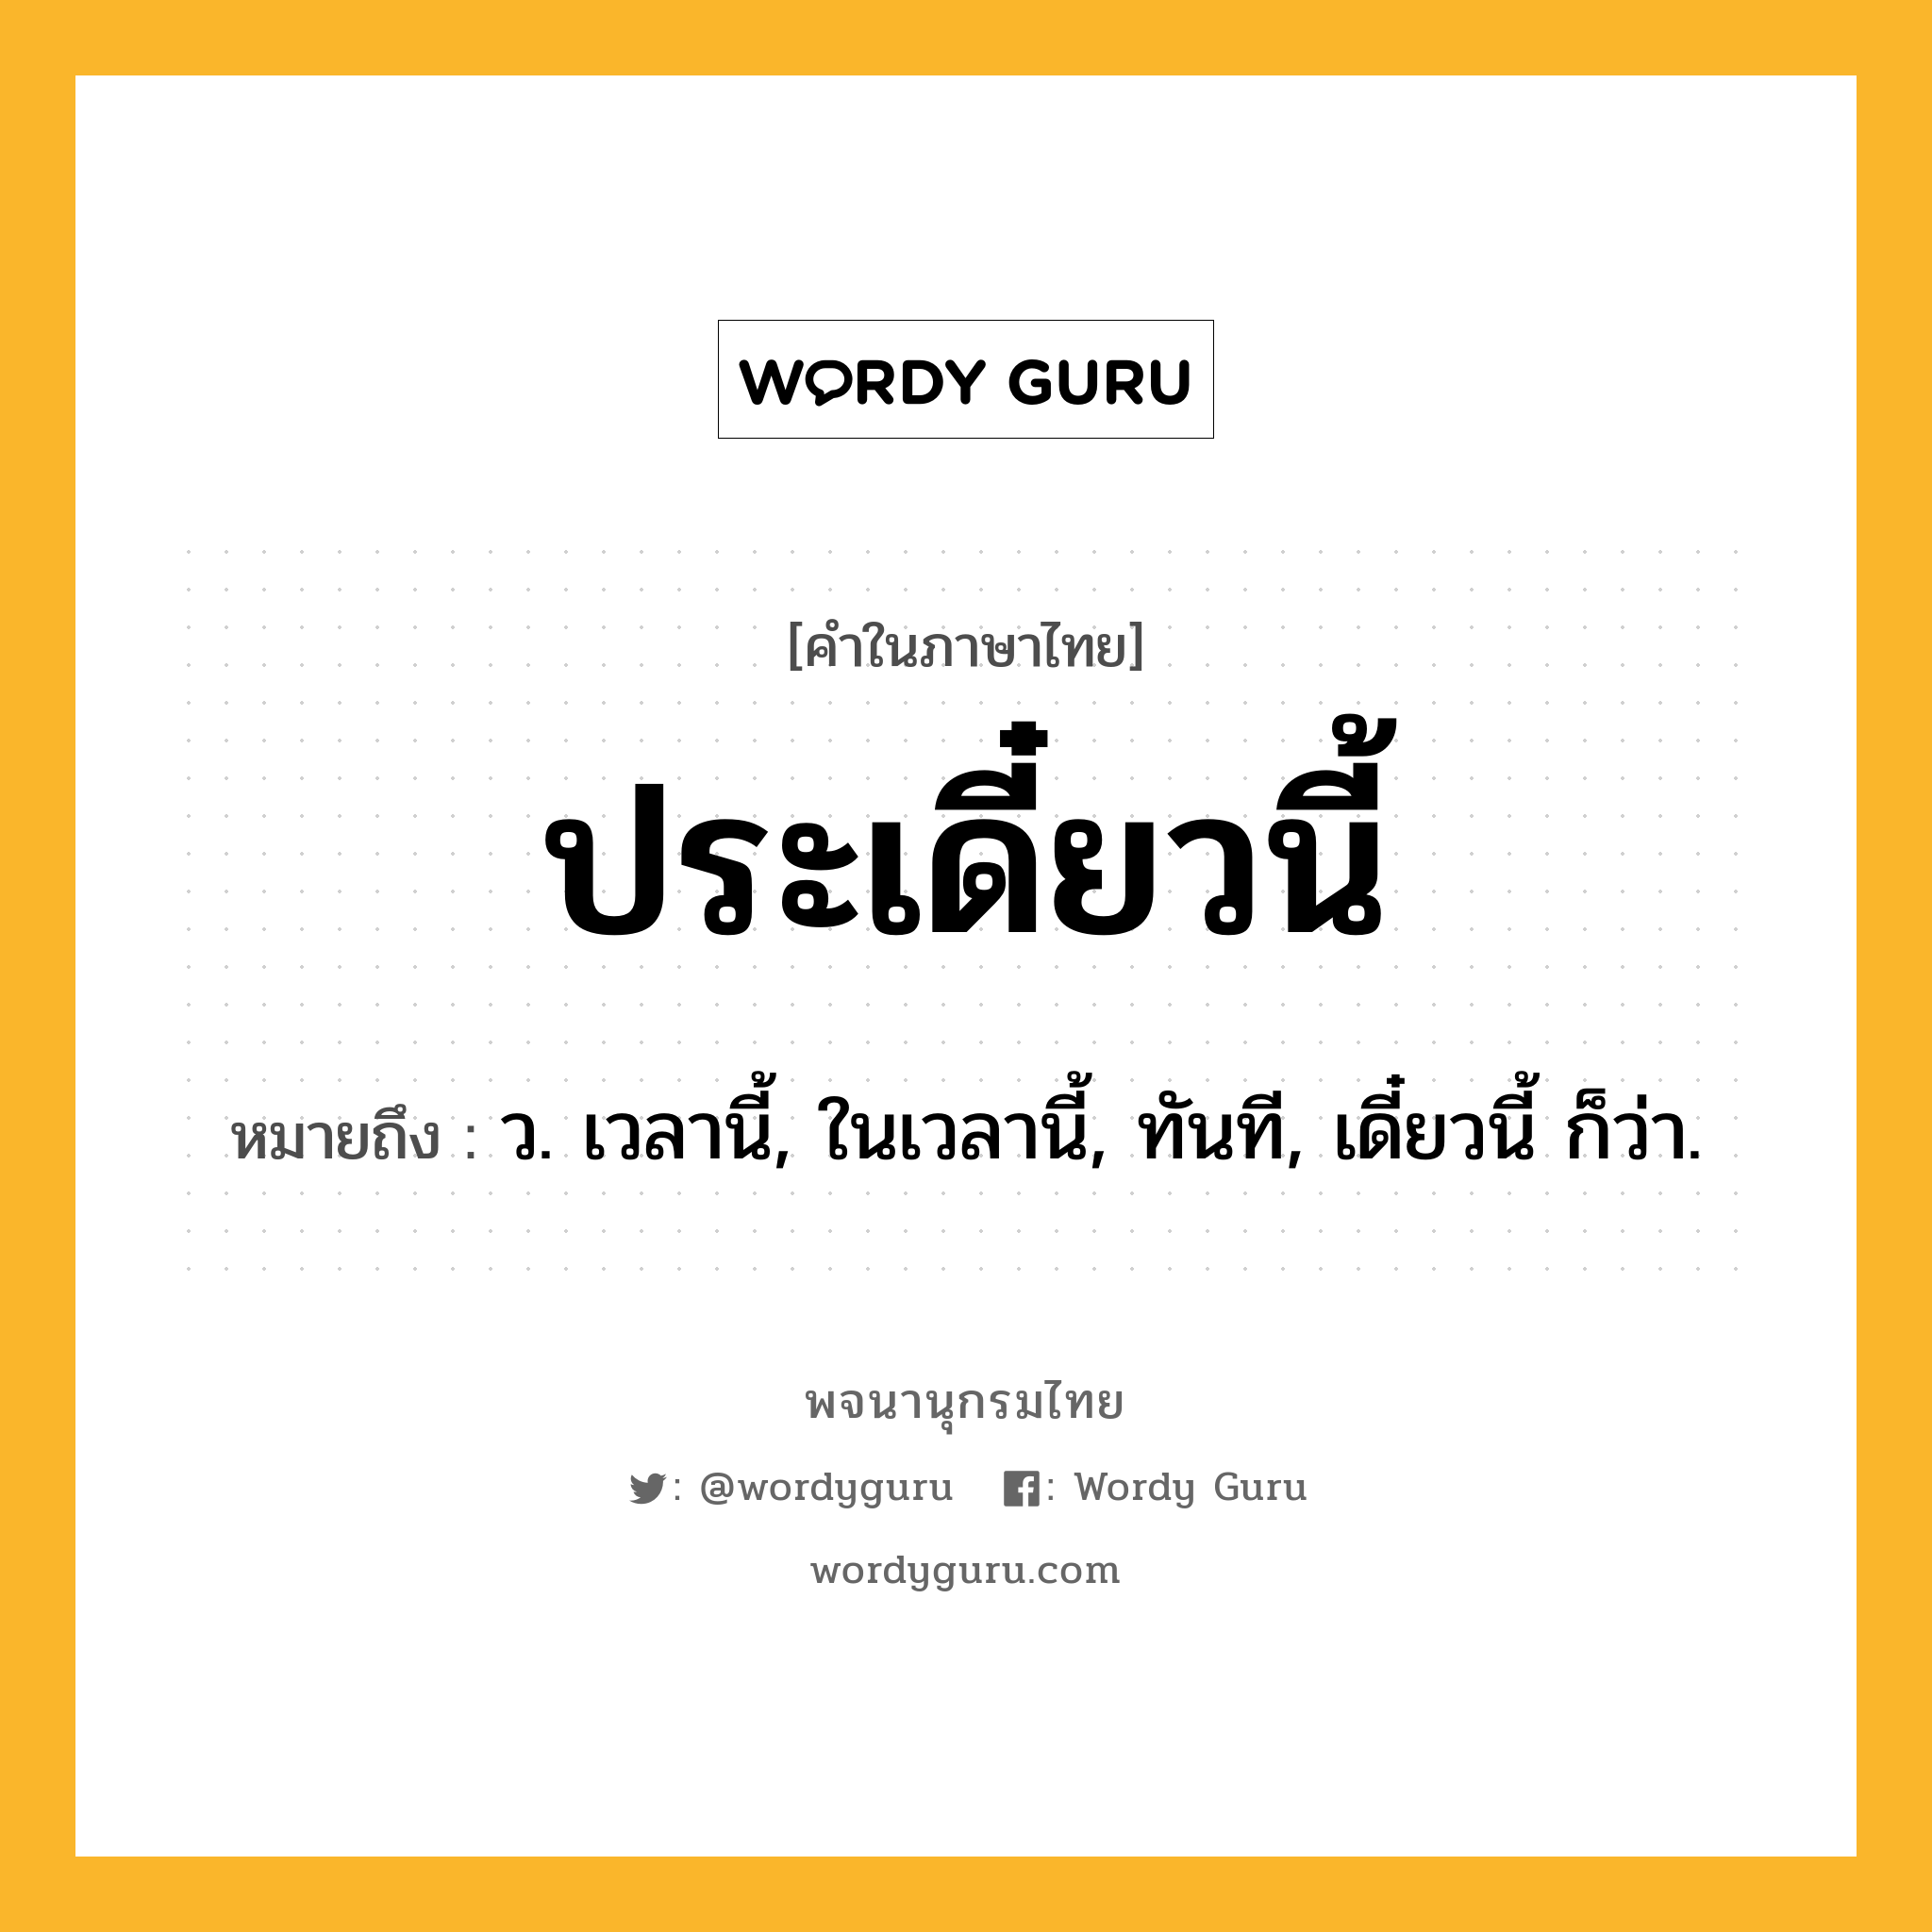 ประเดี๋ยวนี้ หมายถึงอะไร?, คำในภาษาไทย ประเดี๋ยวนี้ หมายถึง ว. เวลานี้, ในเวลานี้, ทันที, เดี๋ยวนี้ ก็ว่า.